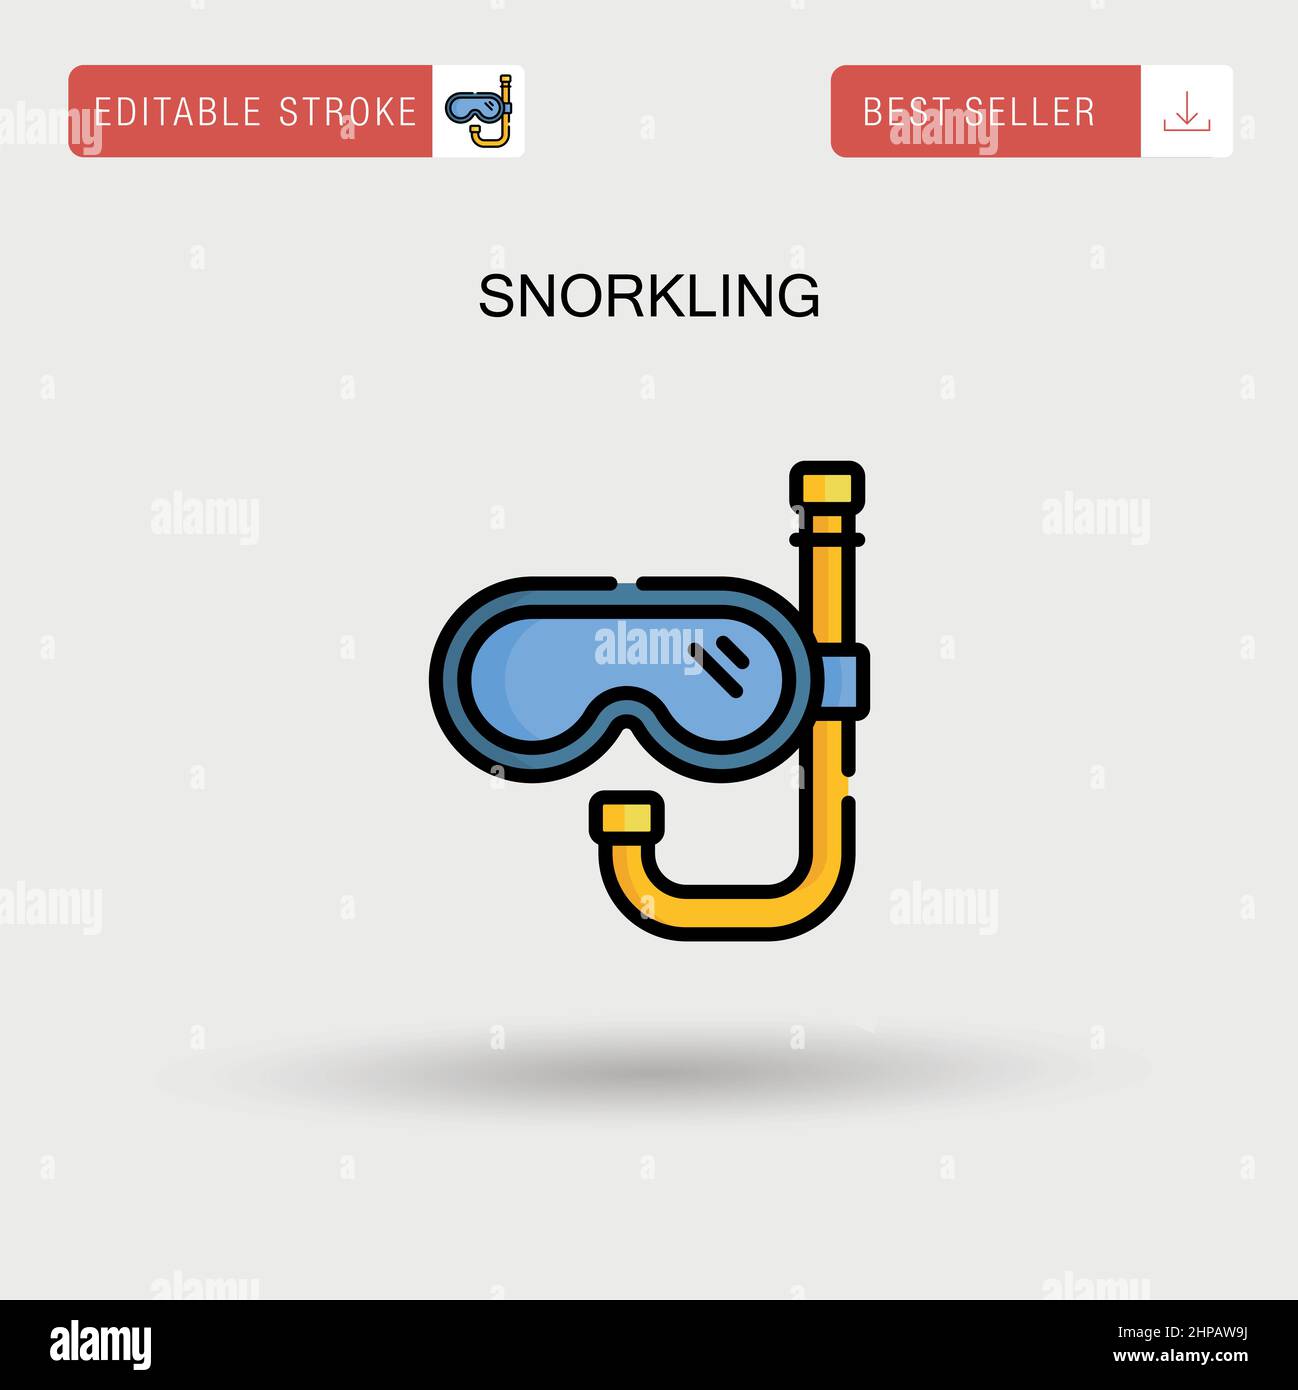 Snorkling Simple vector icon. Stock Vector